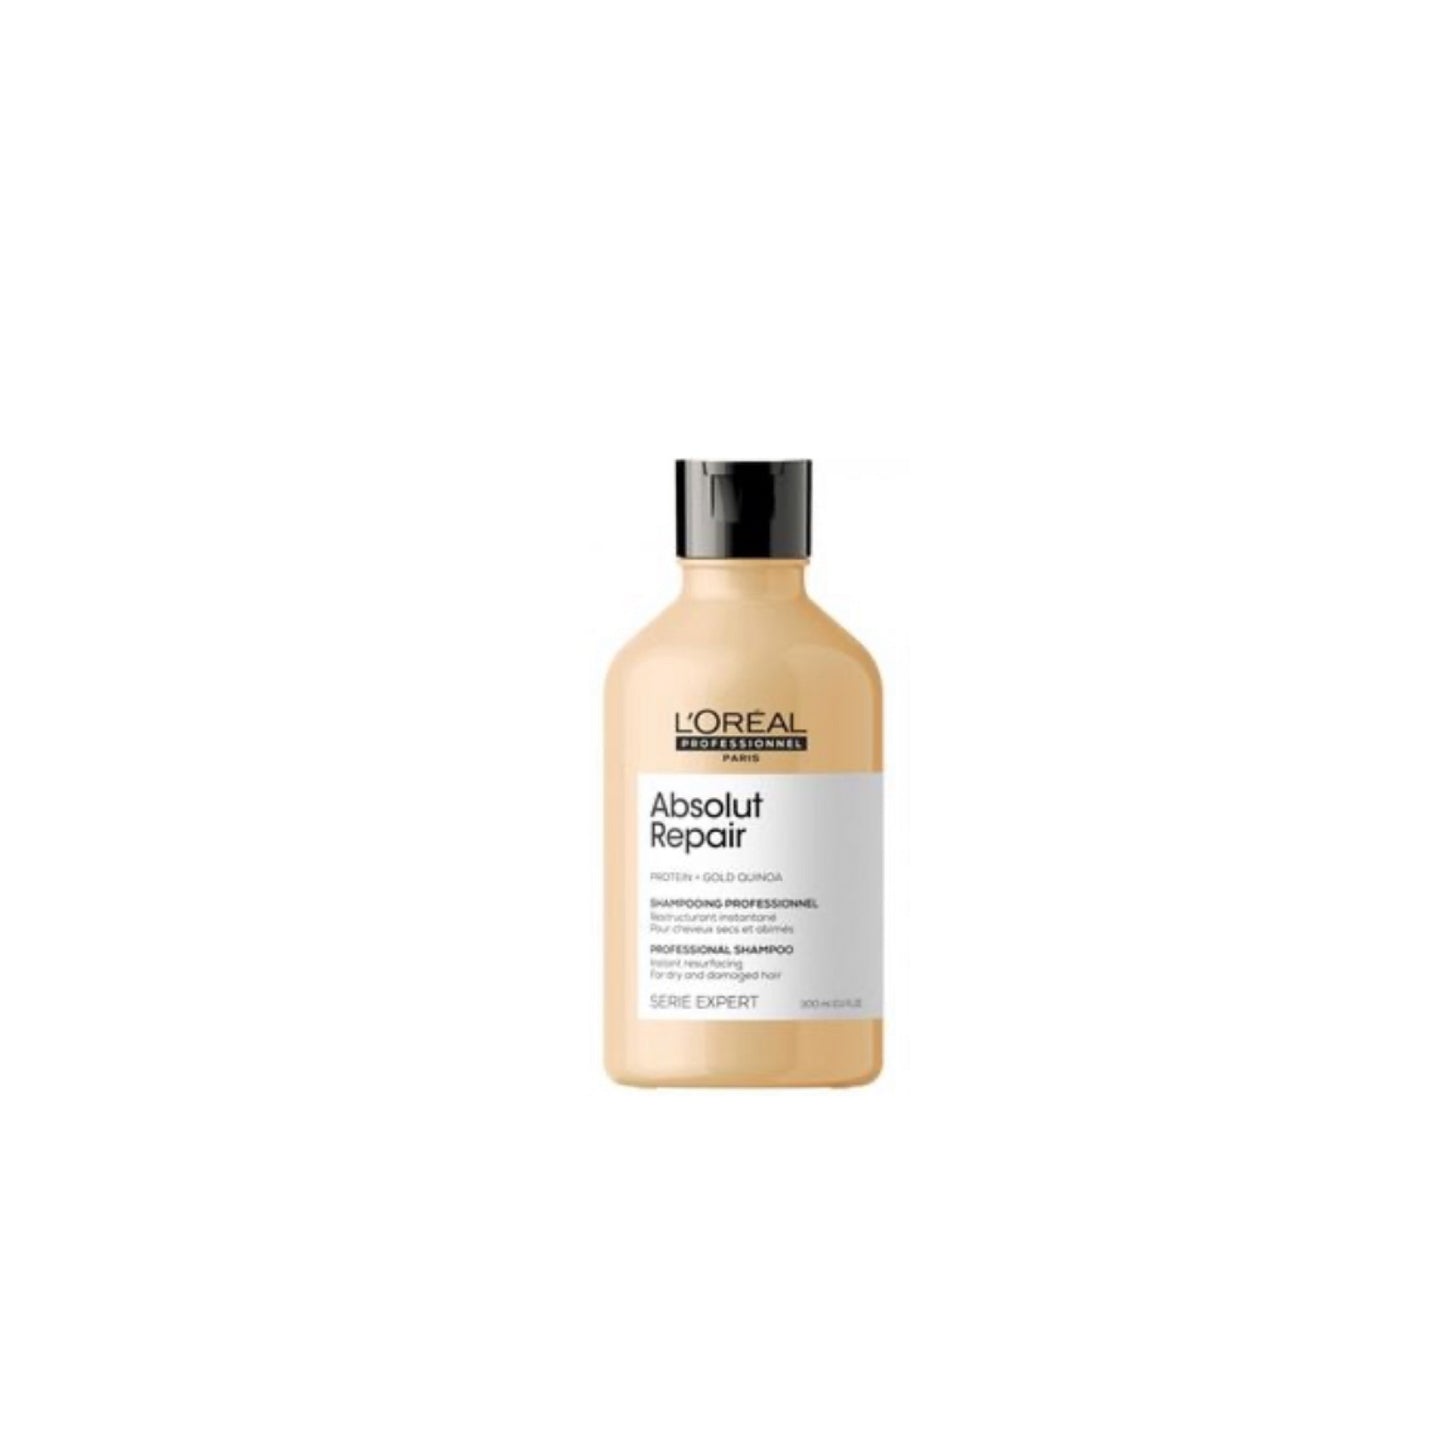 L'Oreal Serie Expert Absolut Repair GOLD QUINOA + PROTEIN Shampoo 300ml